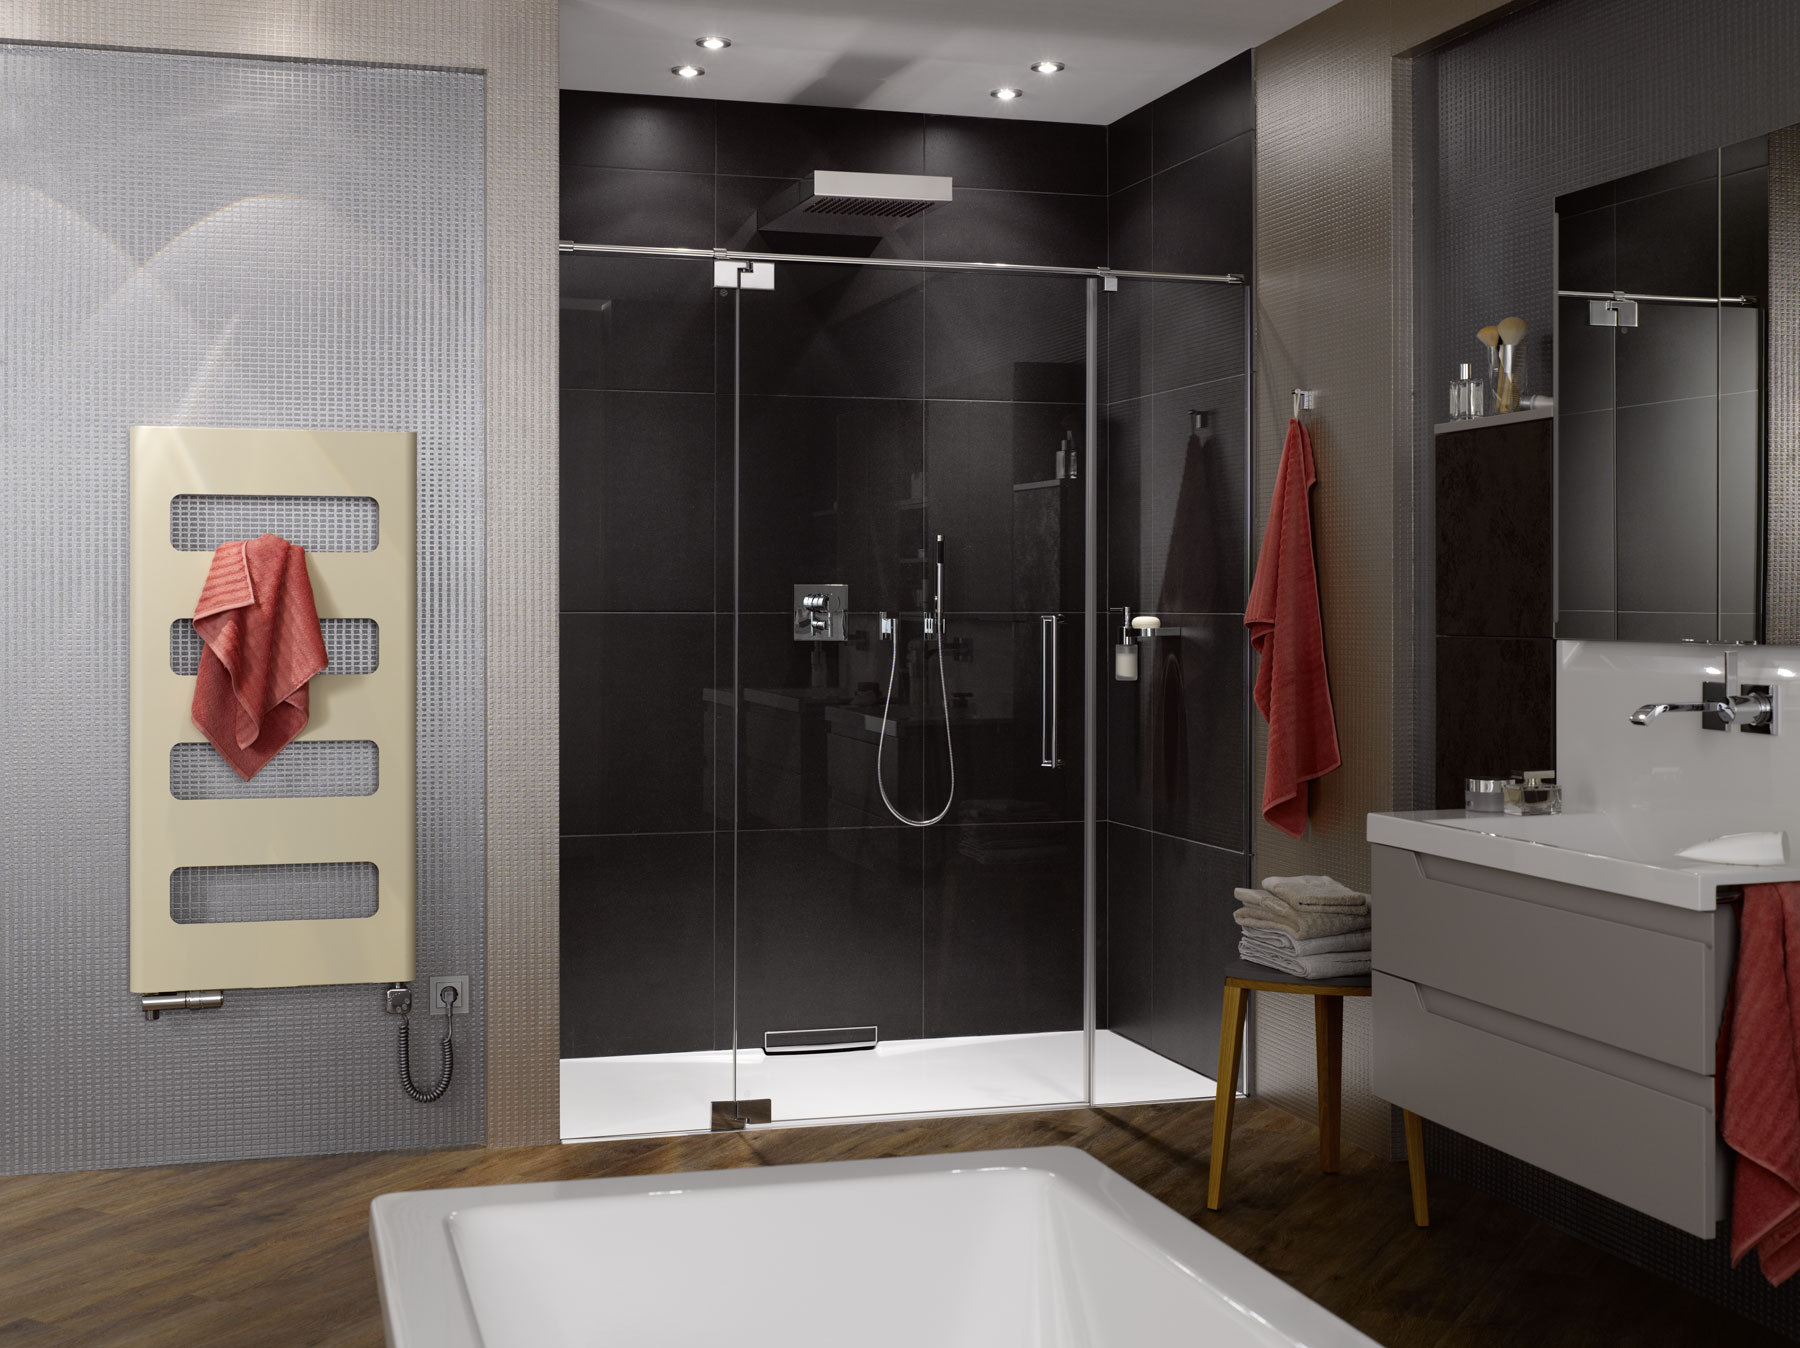 Pro osobitost a jedinečnost vaši koupelny nabízíme eleganci, nápaditý design a nejvyšší kvalitu.  - foto - retro